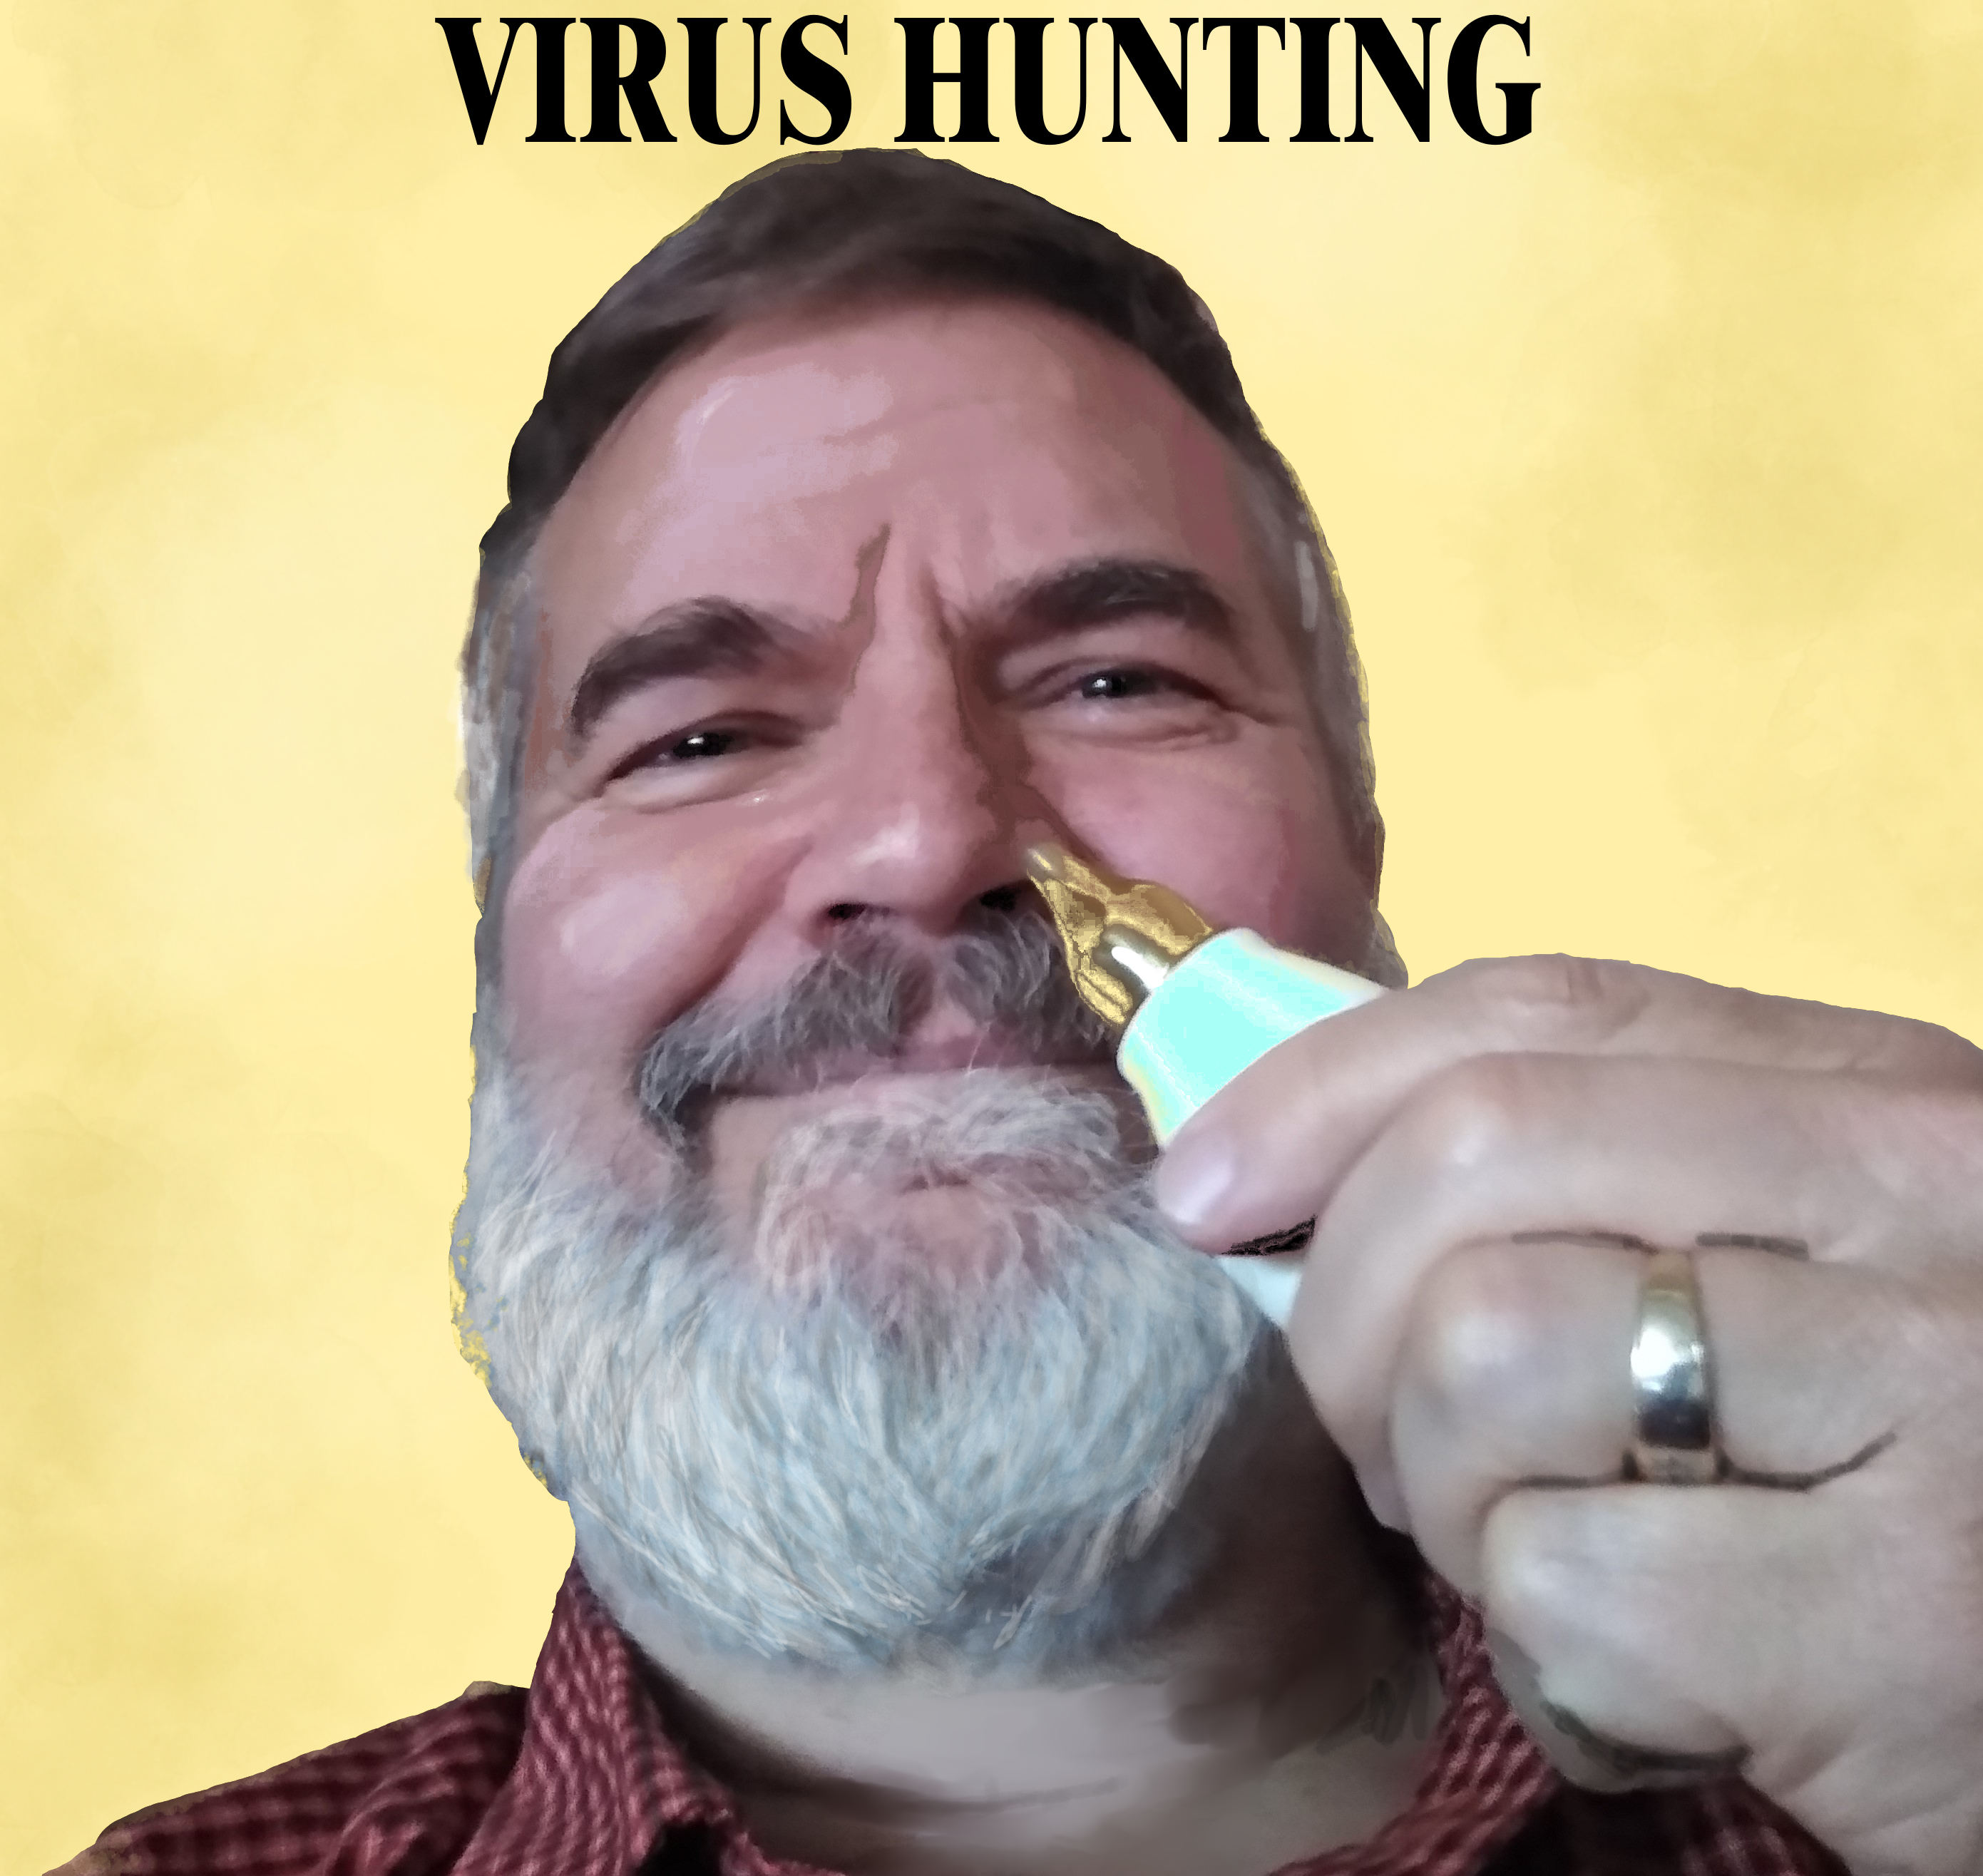 Virus Hunting